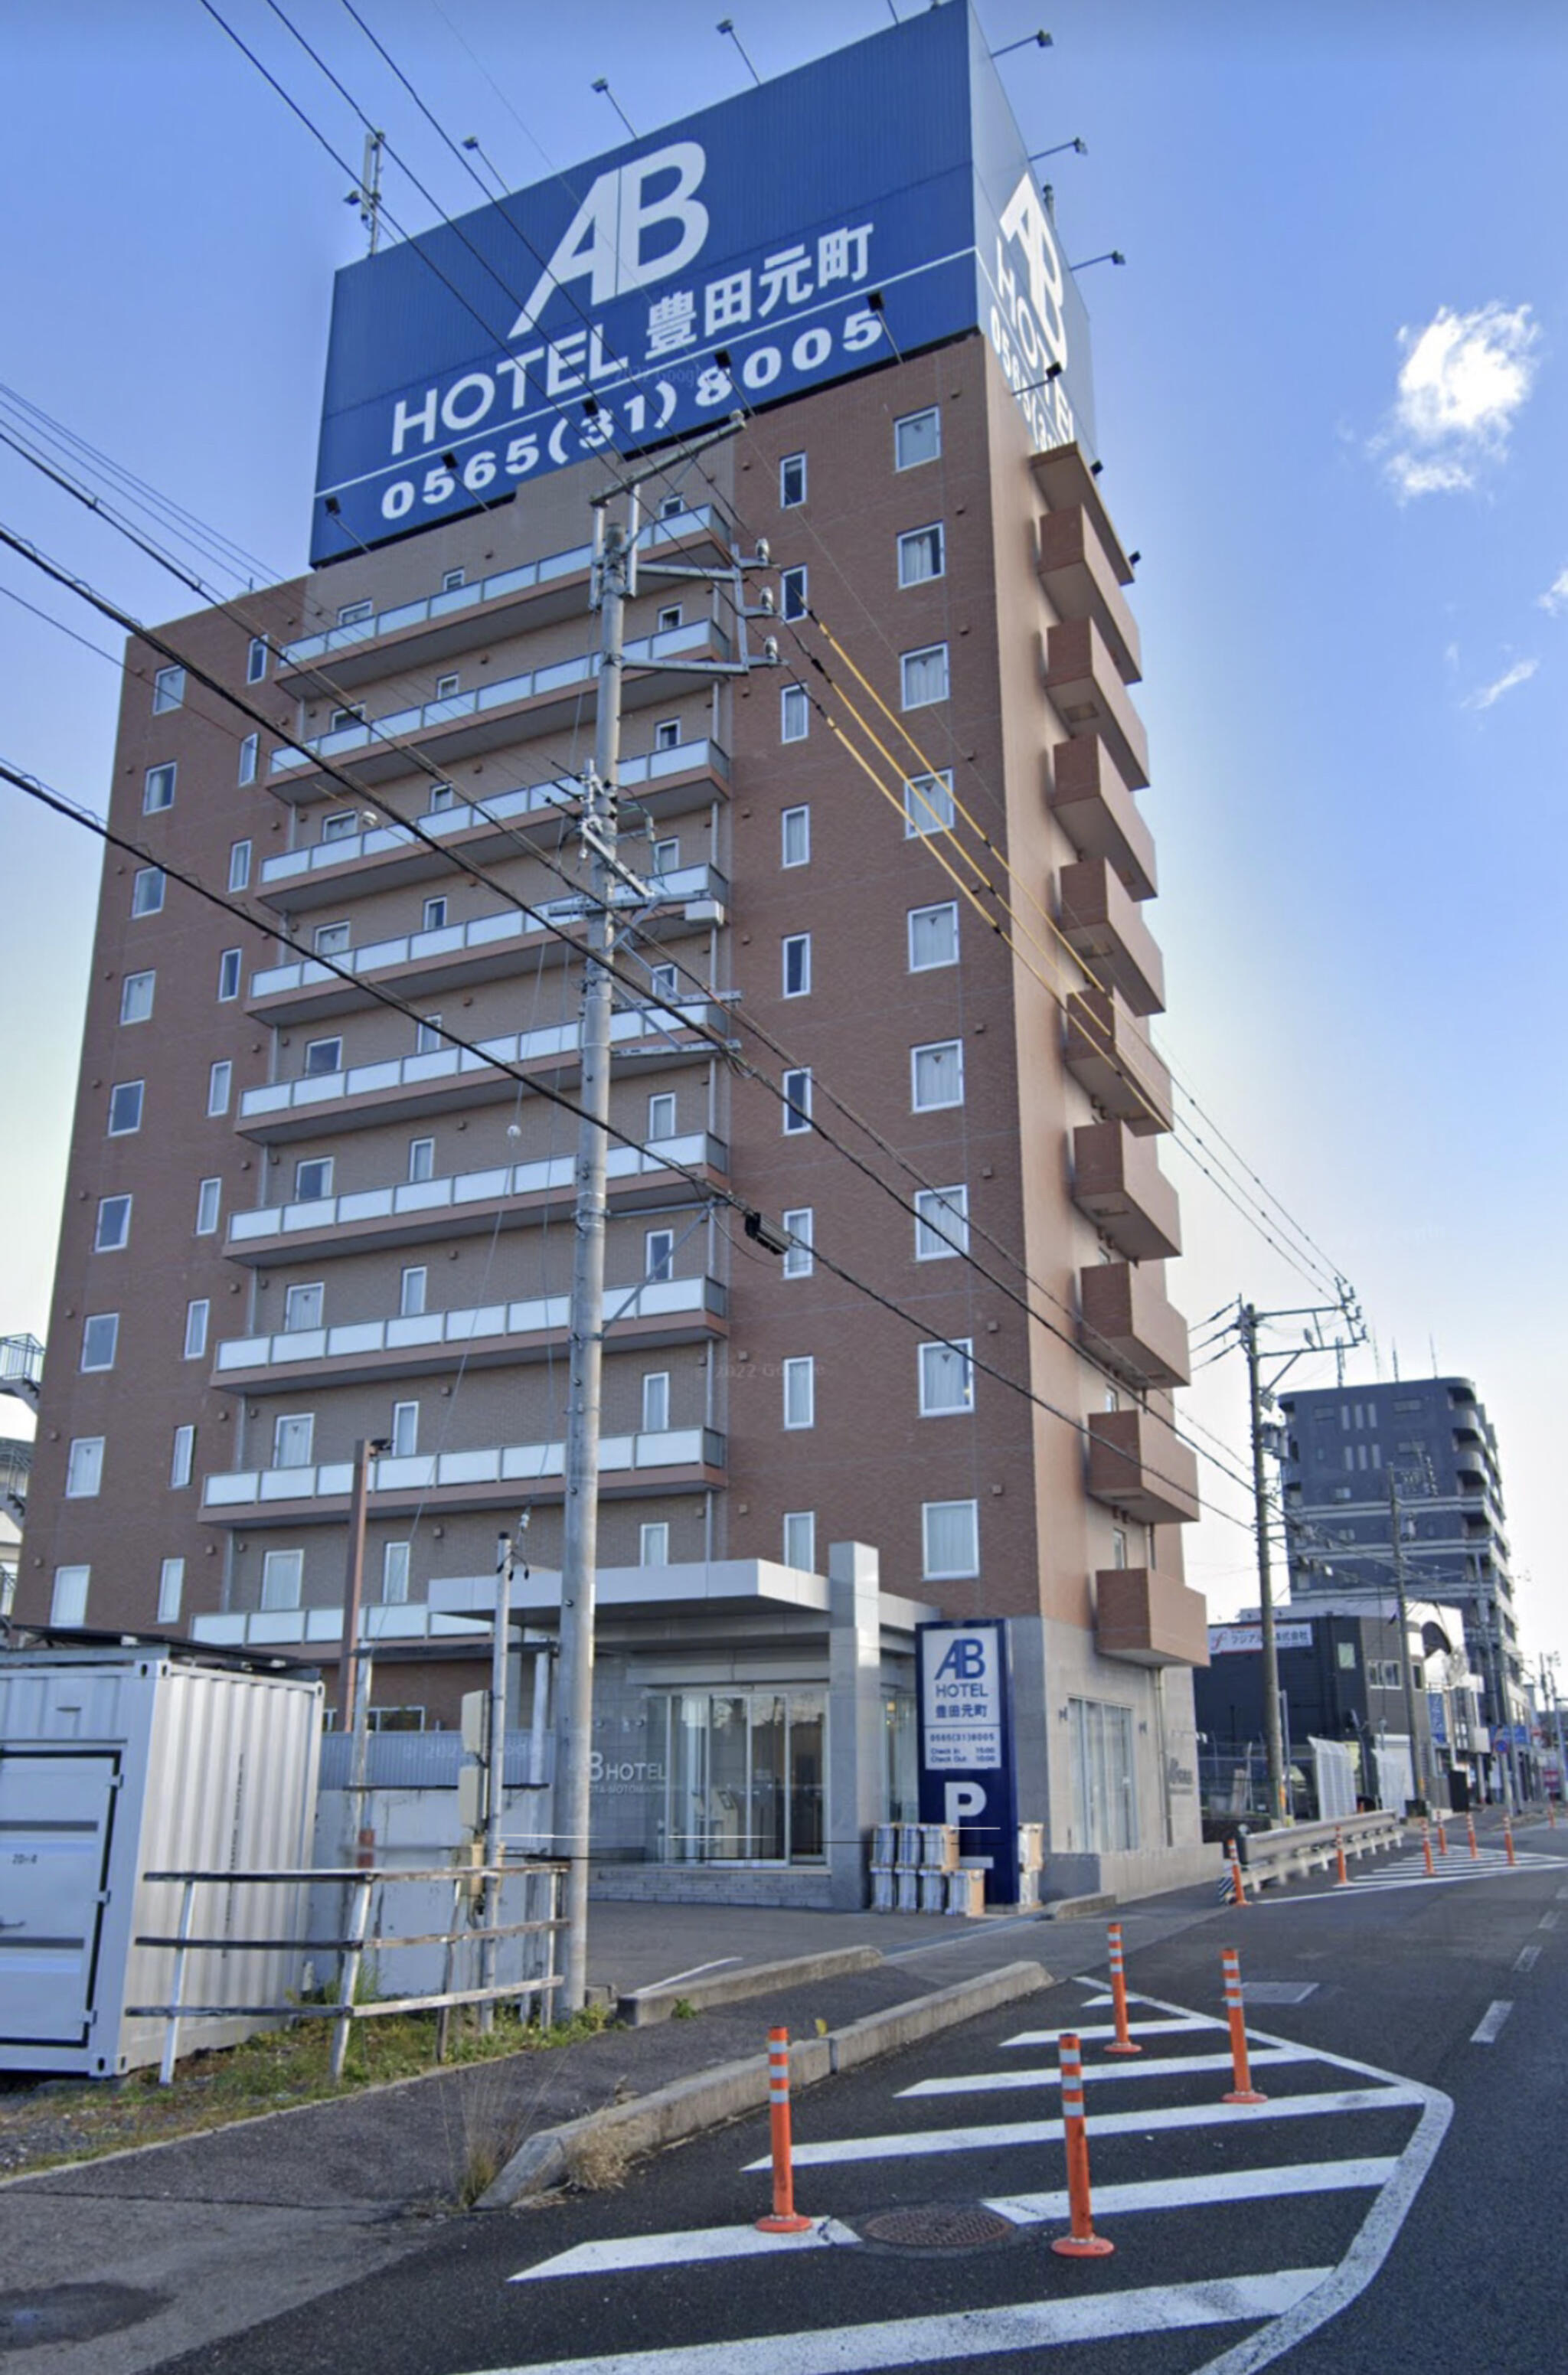 ABホテル 豊田元町の代表写真6